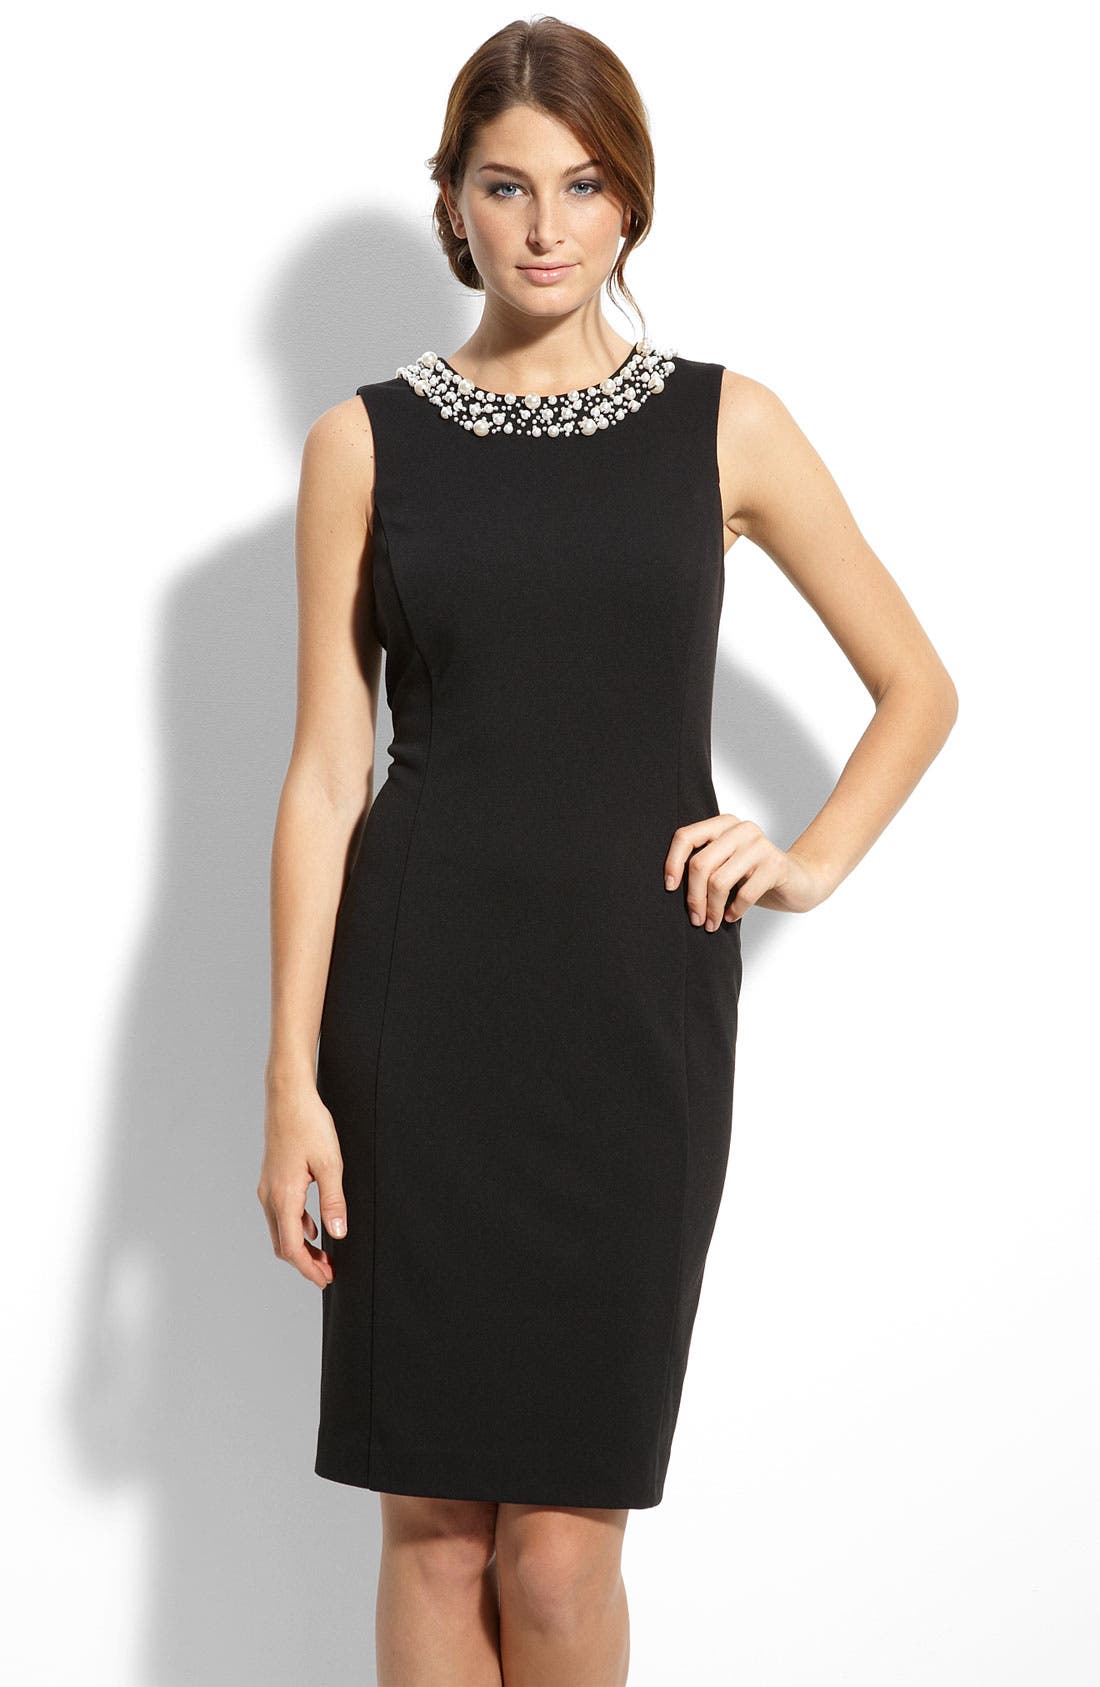 calvin klein black dress with pearl neckline